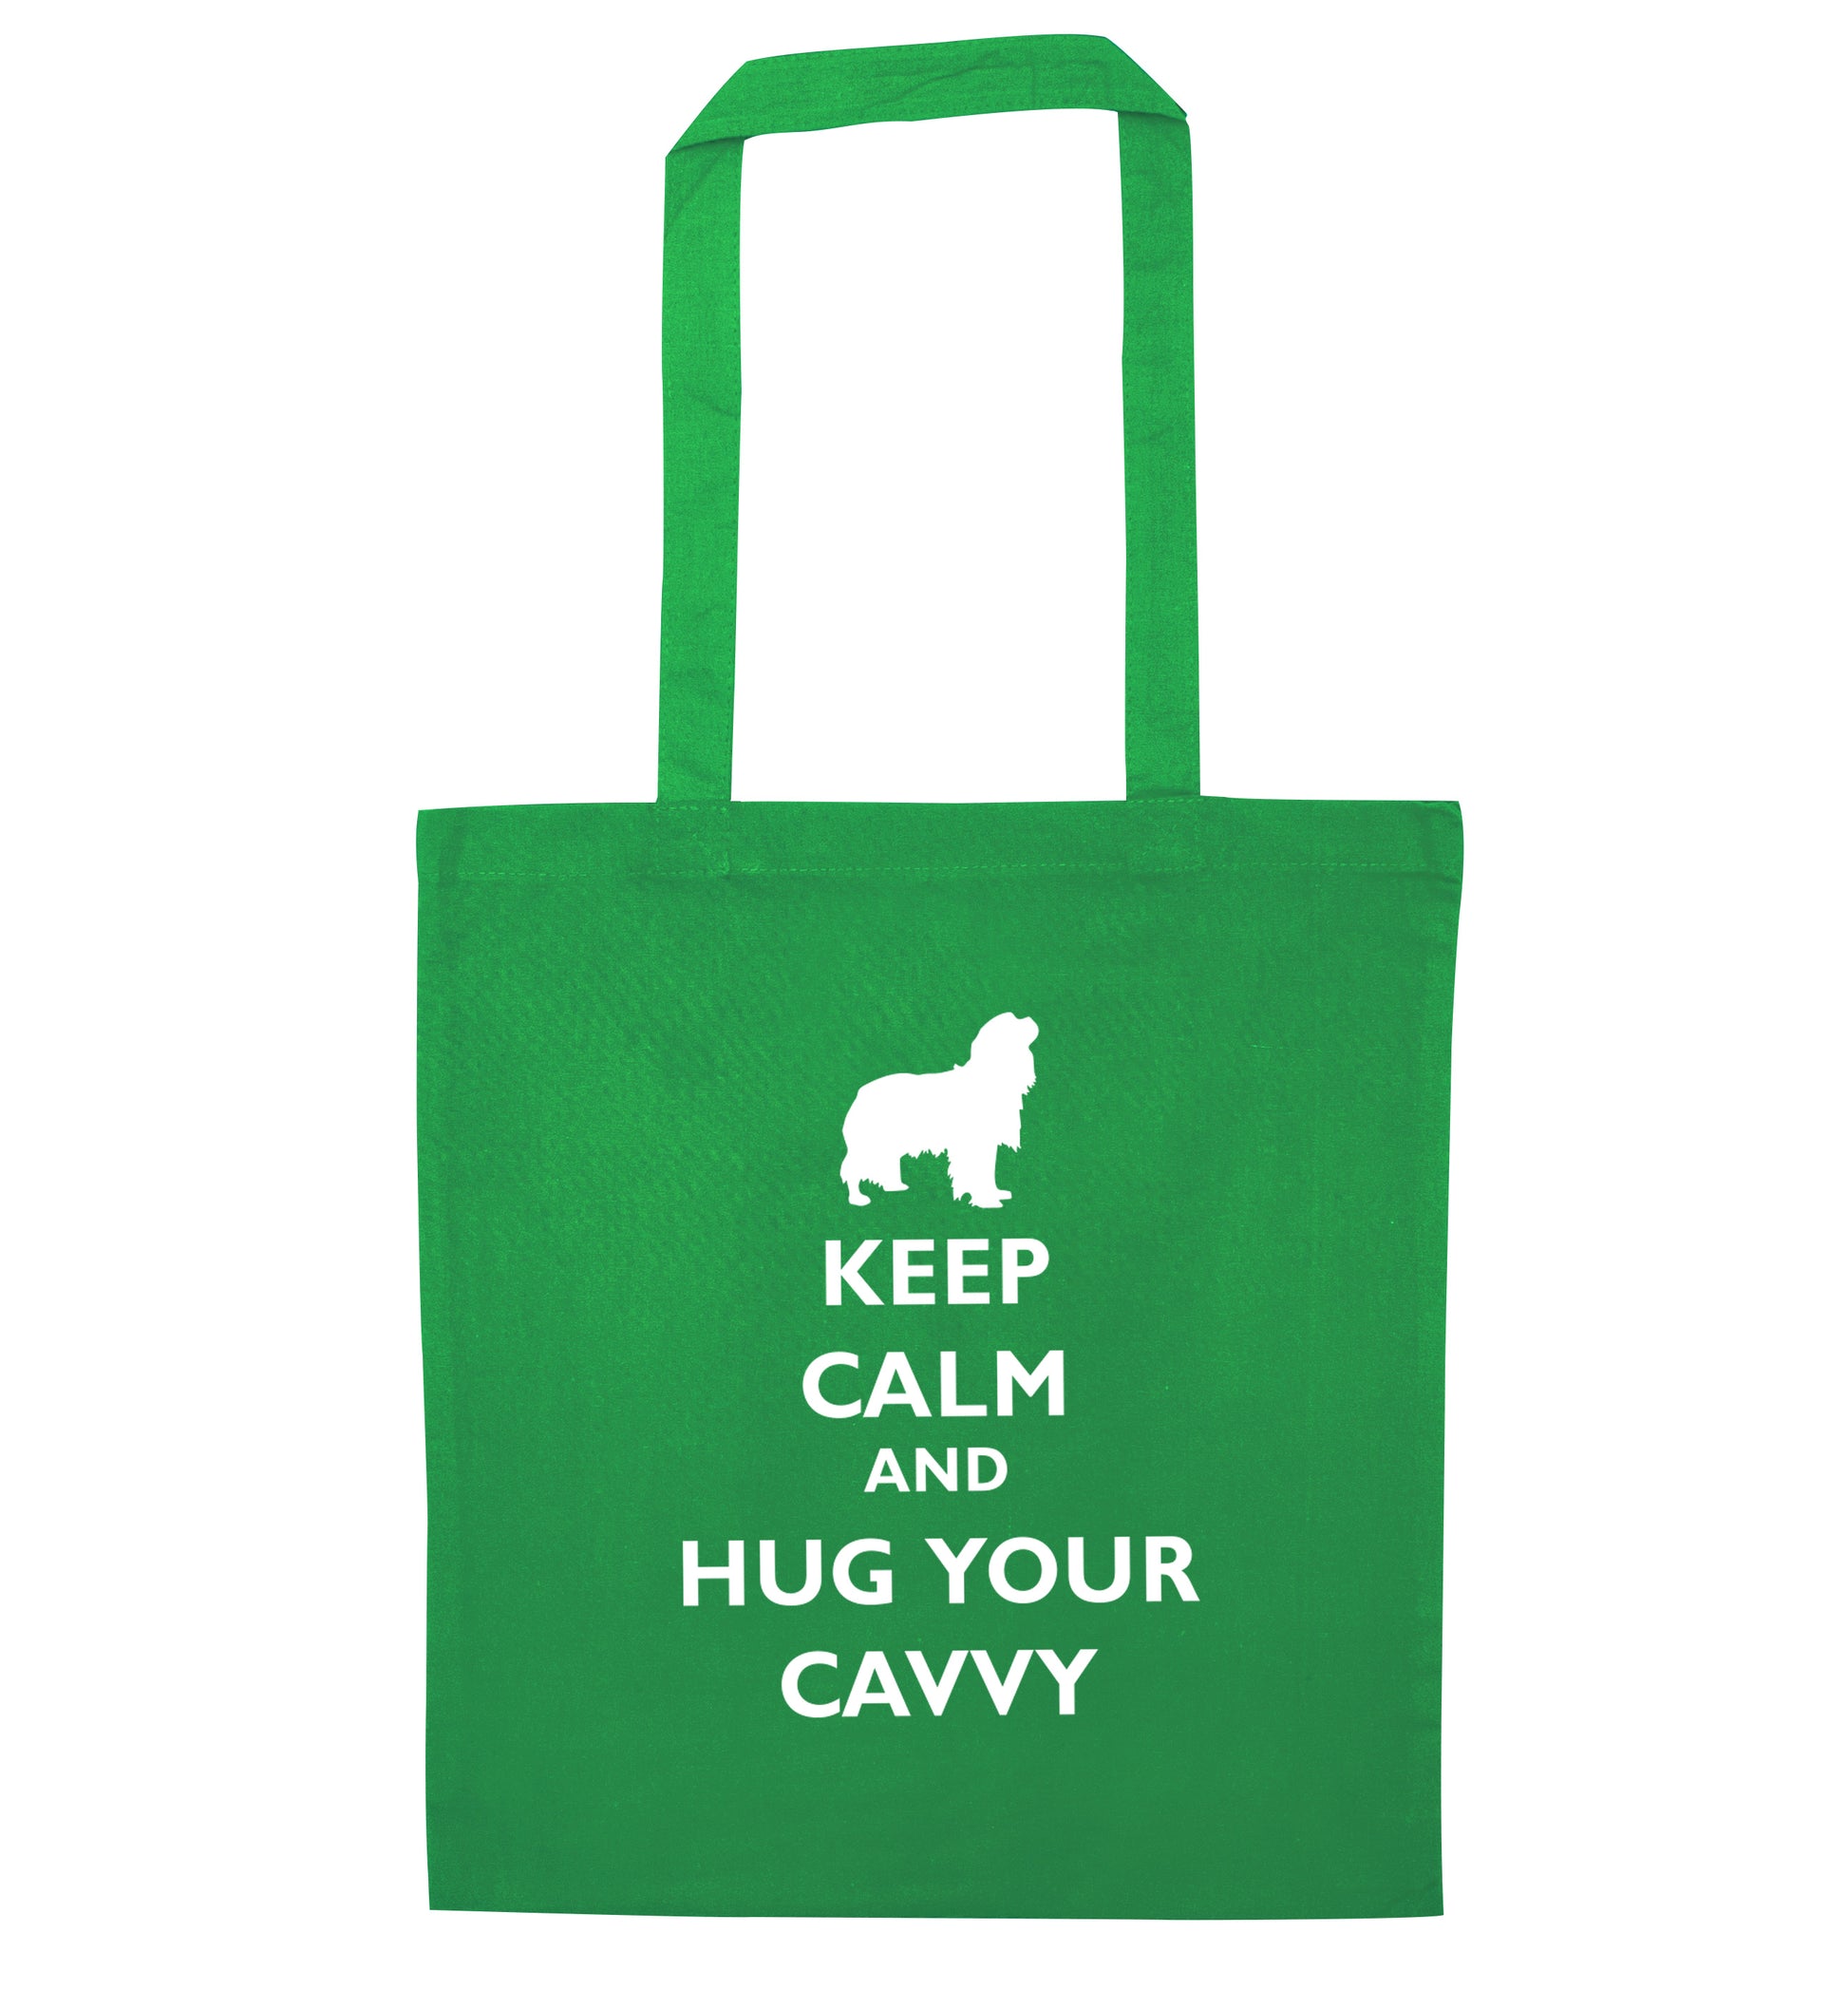 Keep calm and hug your cavvy green tote bag